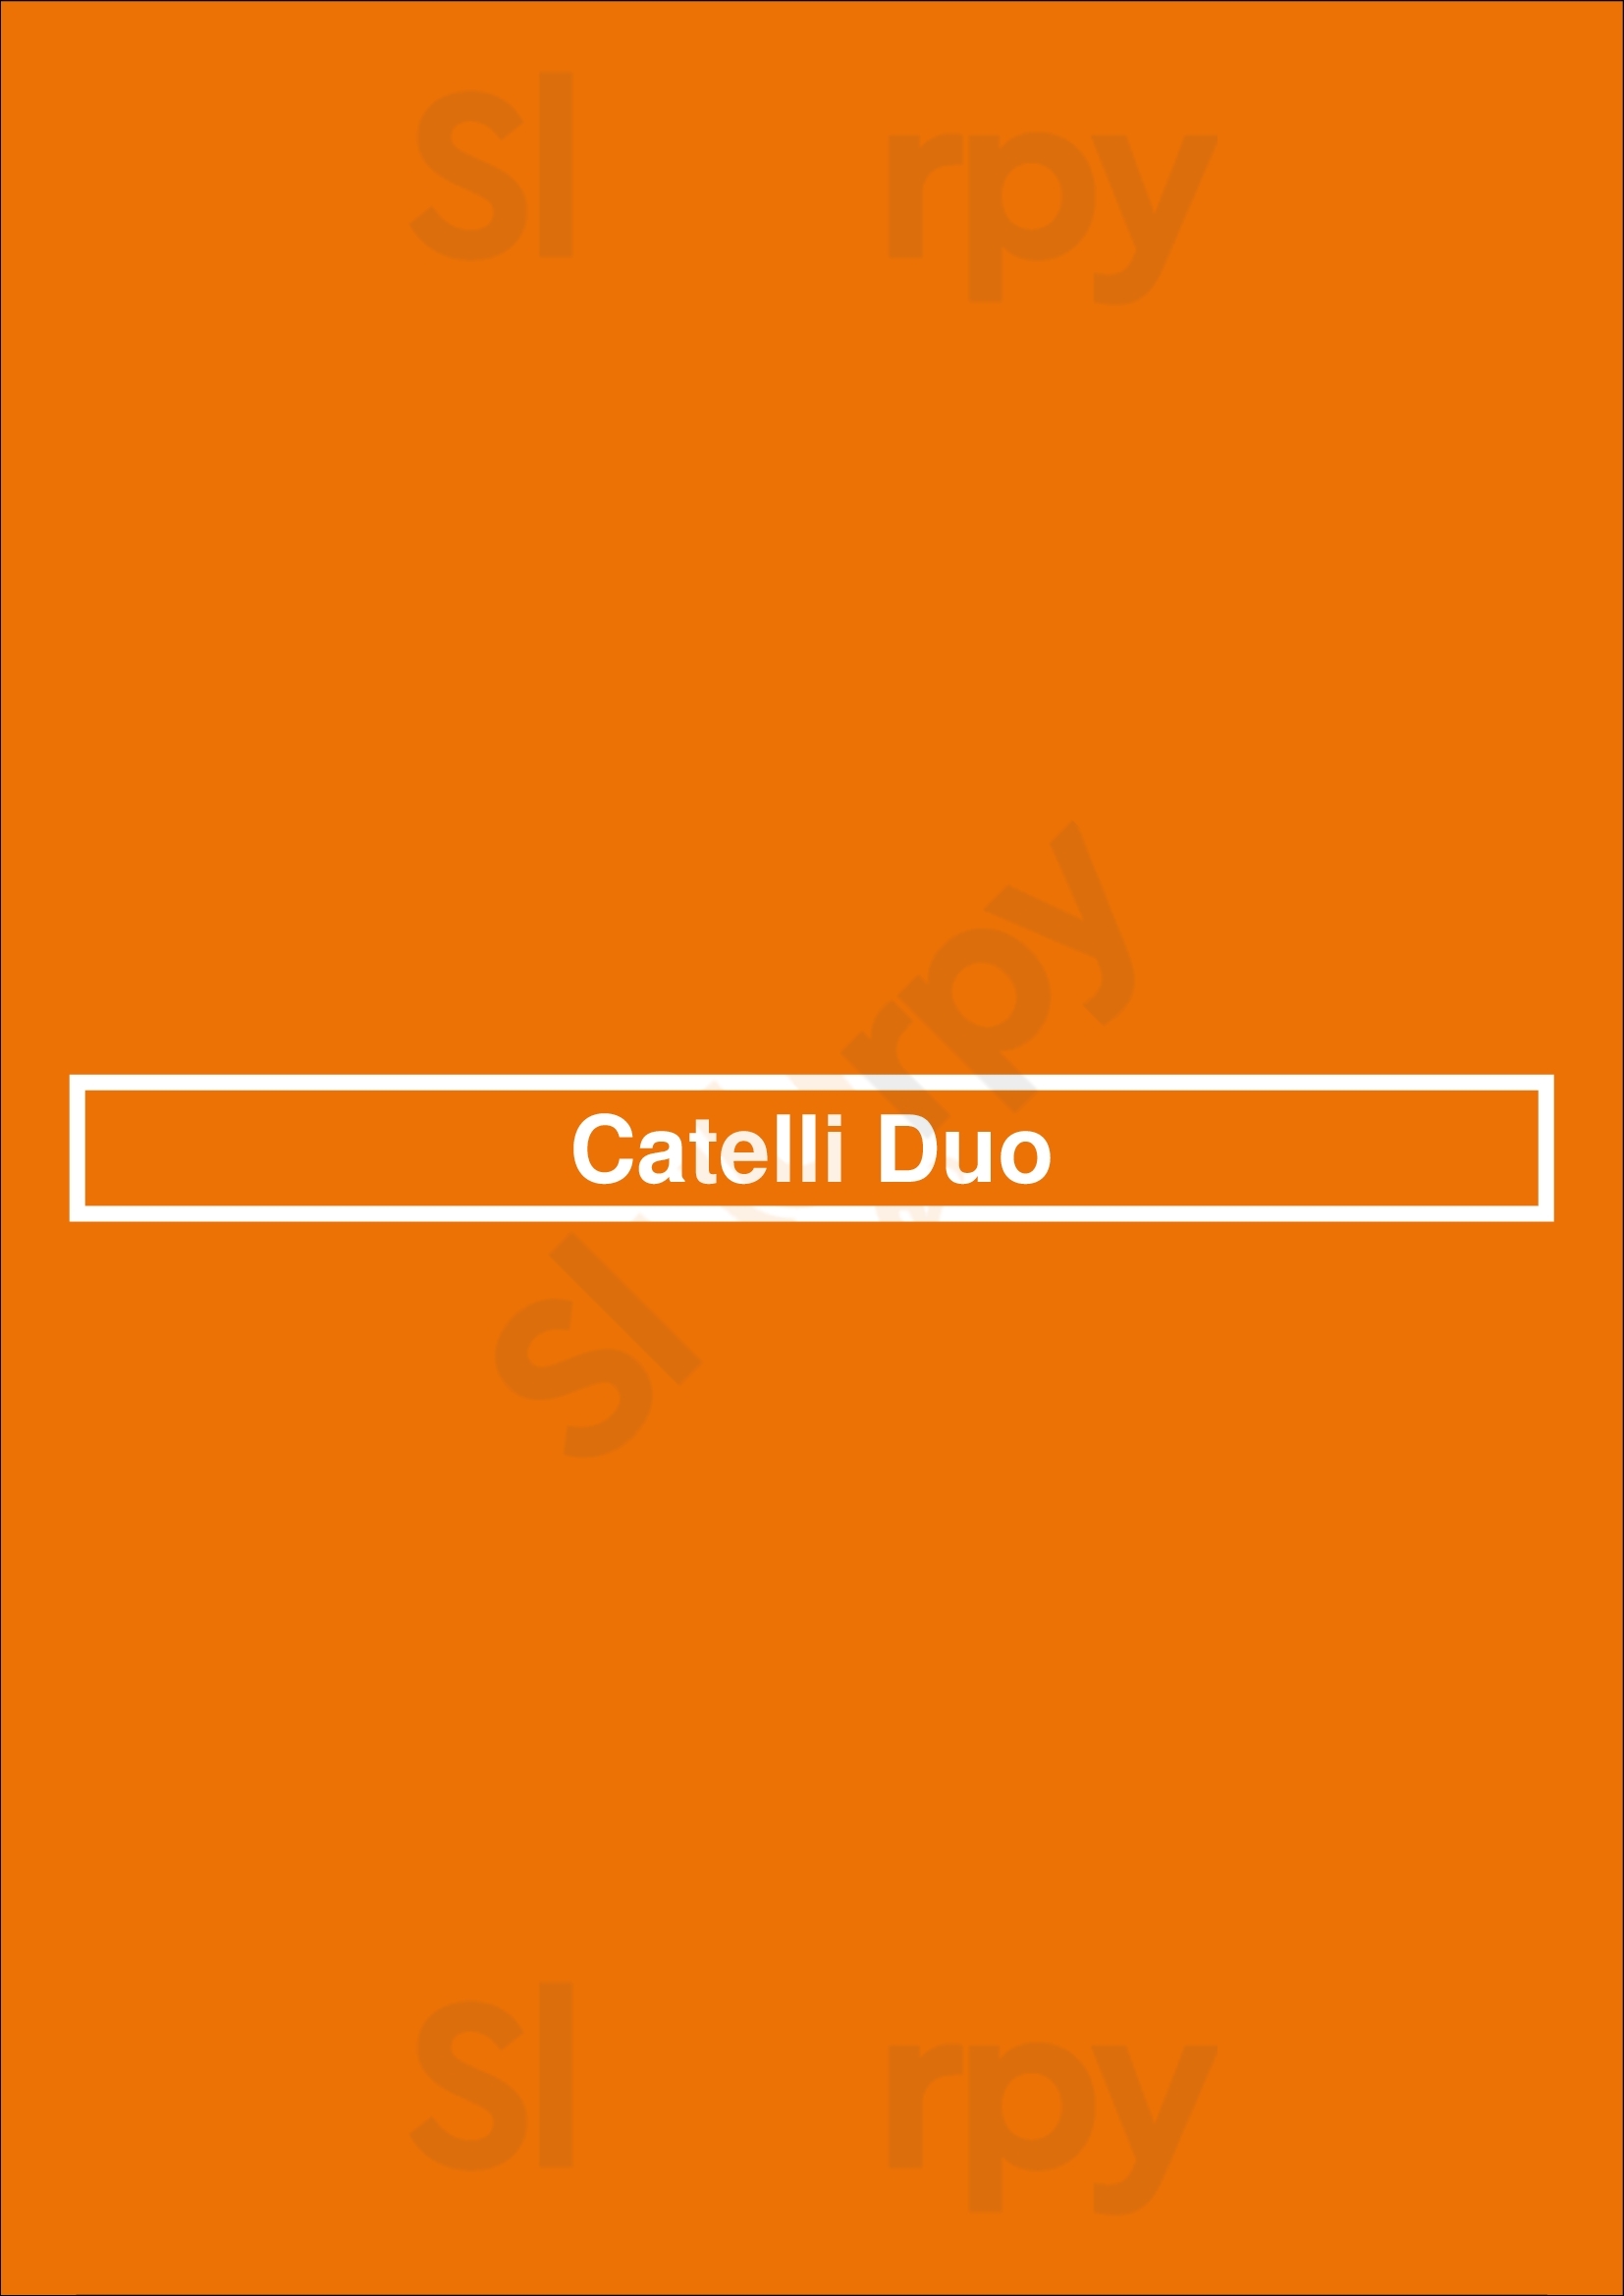 Catelli Duo Voorhees Menu - 1